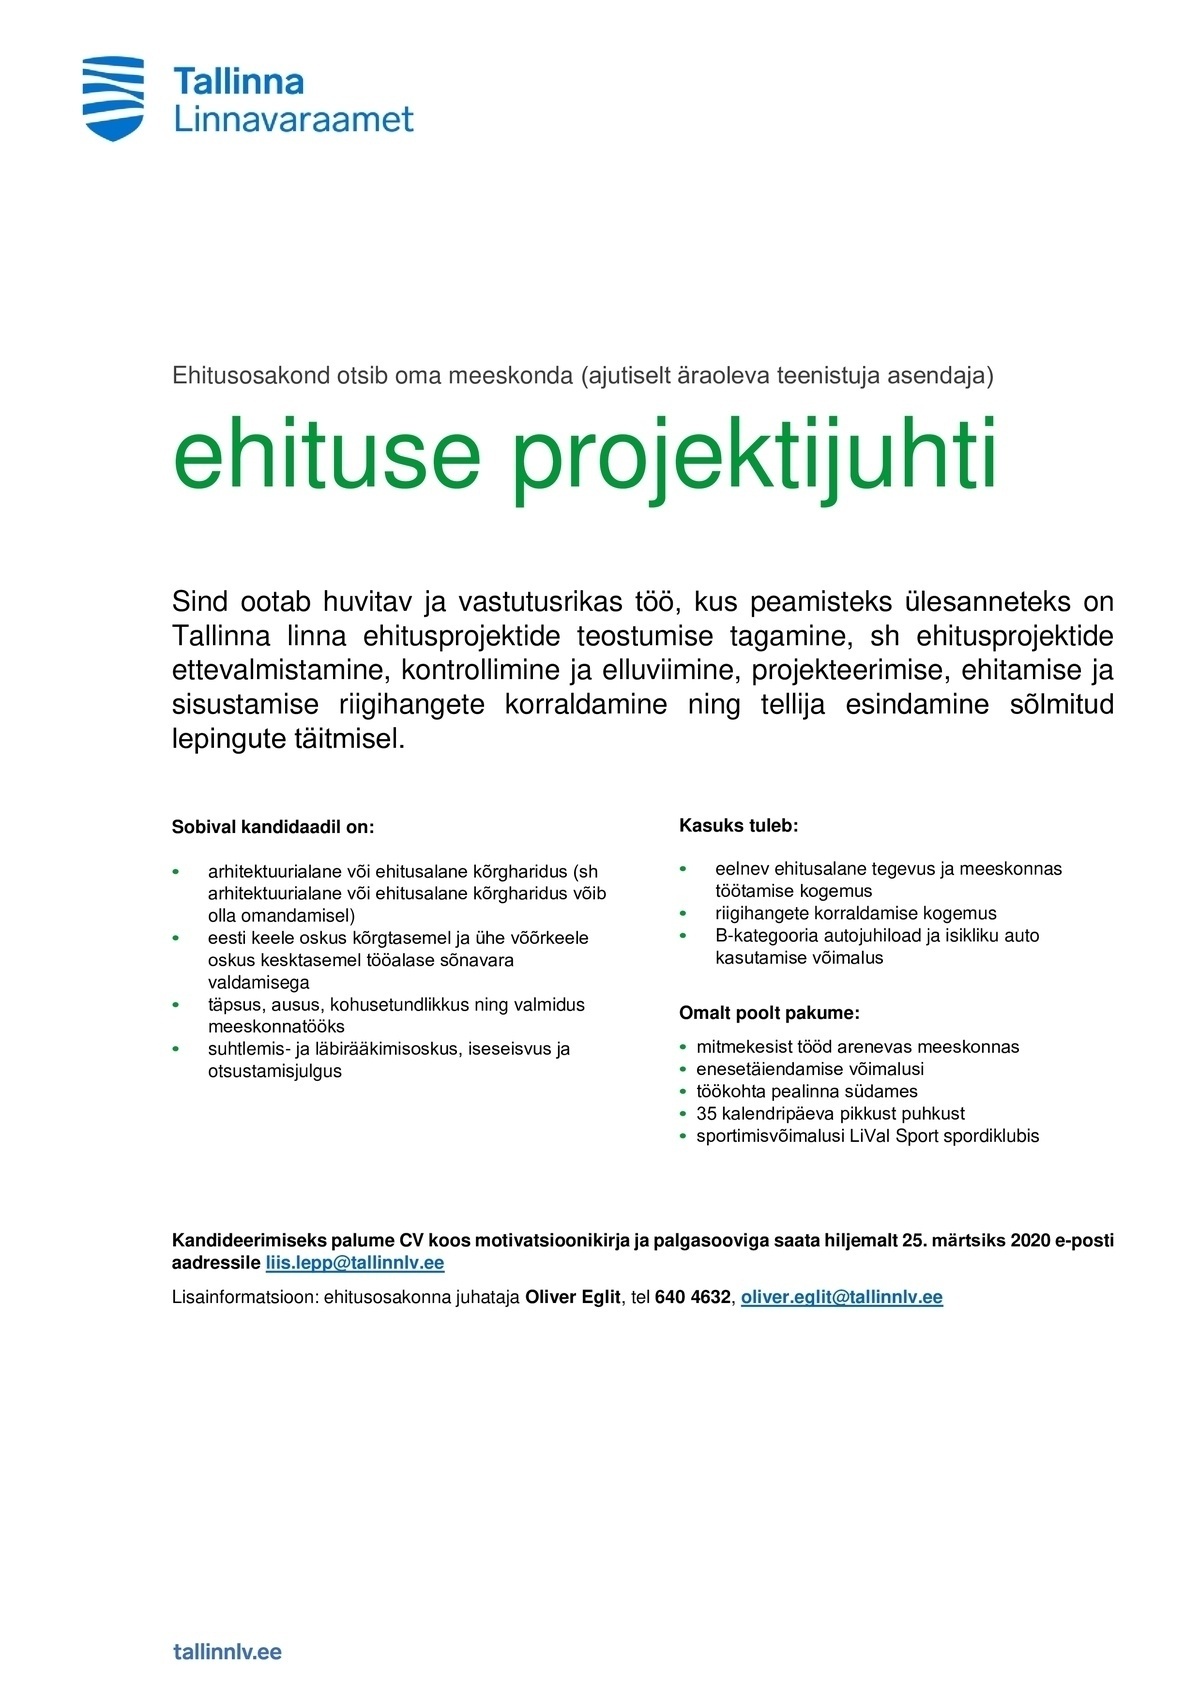 TALLINNA LINNAVARAAMET Ehituse projektijuht (ajutiselt äraoleva teenistuja asendaja)